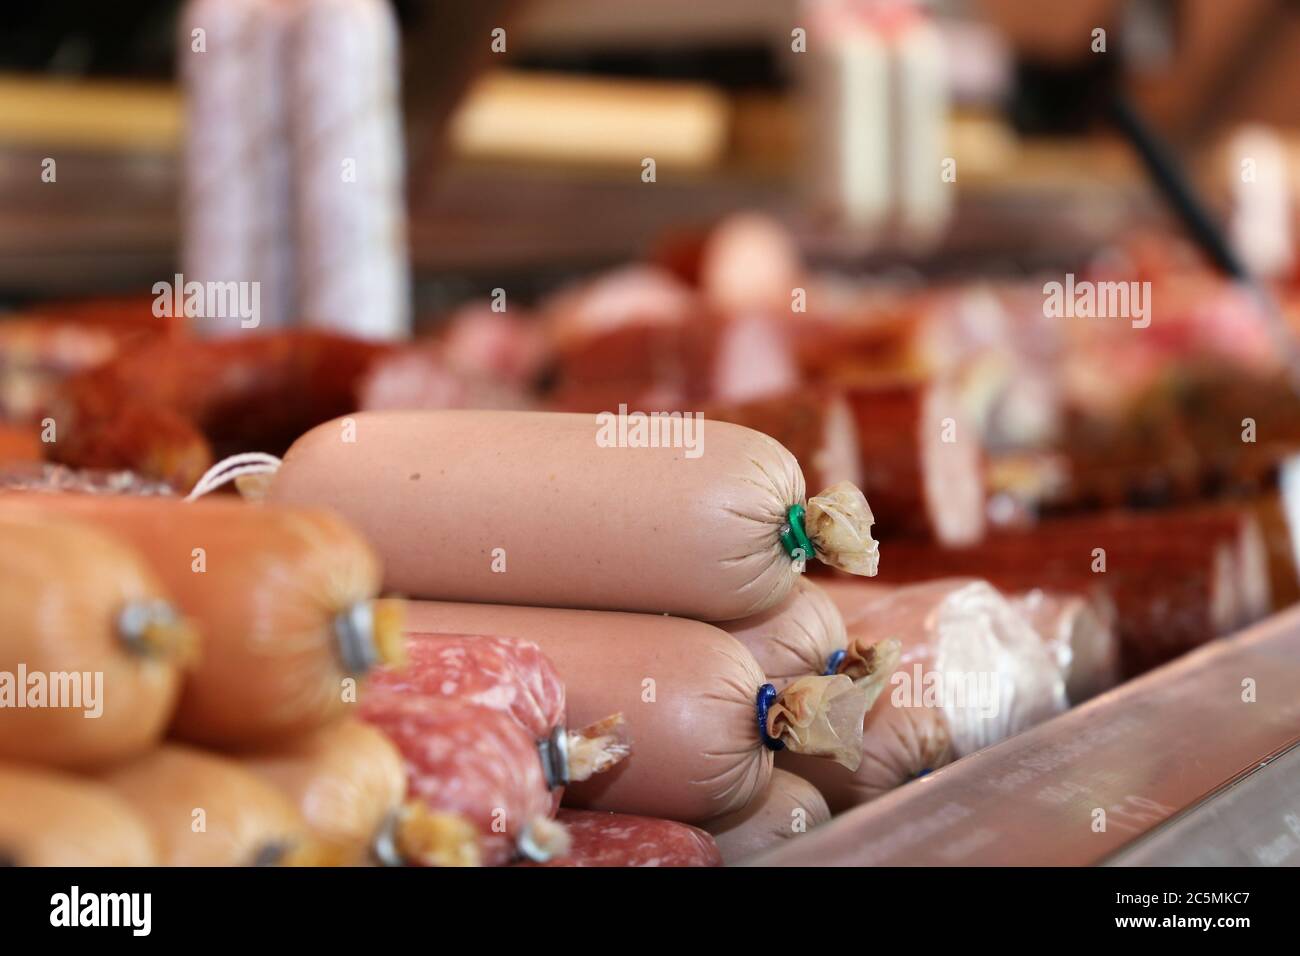 Mostrador de salchichas en una carnicería Foto de stock